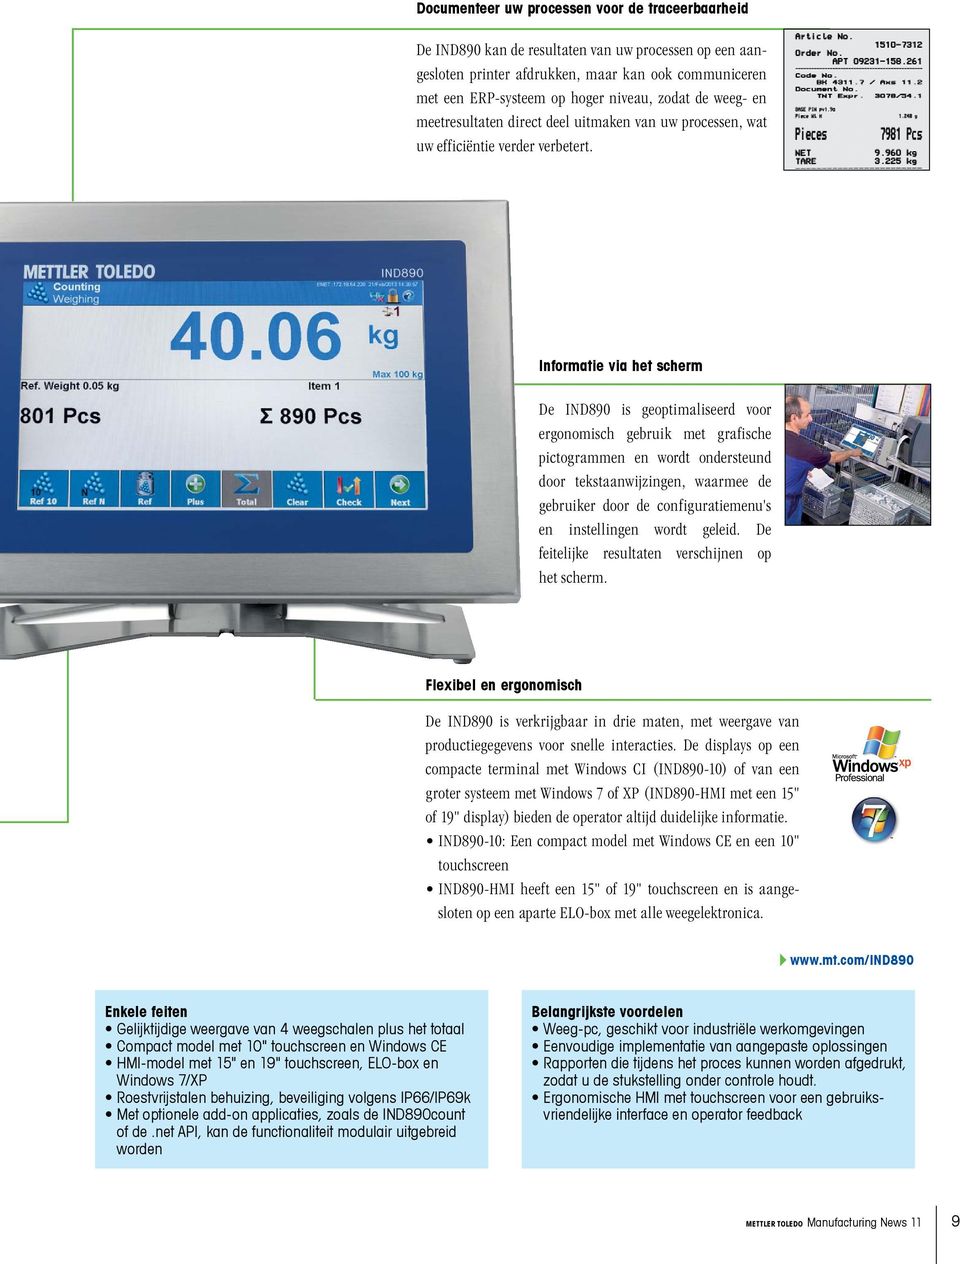 Informatie via het scherm De IND890 is geoptimaliseerd voor ergonomisch gebruik met grafische pictogrammen en wordt ondersteund door tekstaanwijzingen, waarmee de gebruiker door de configuratiemenu's